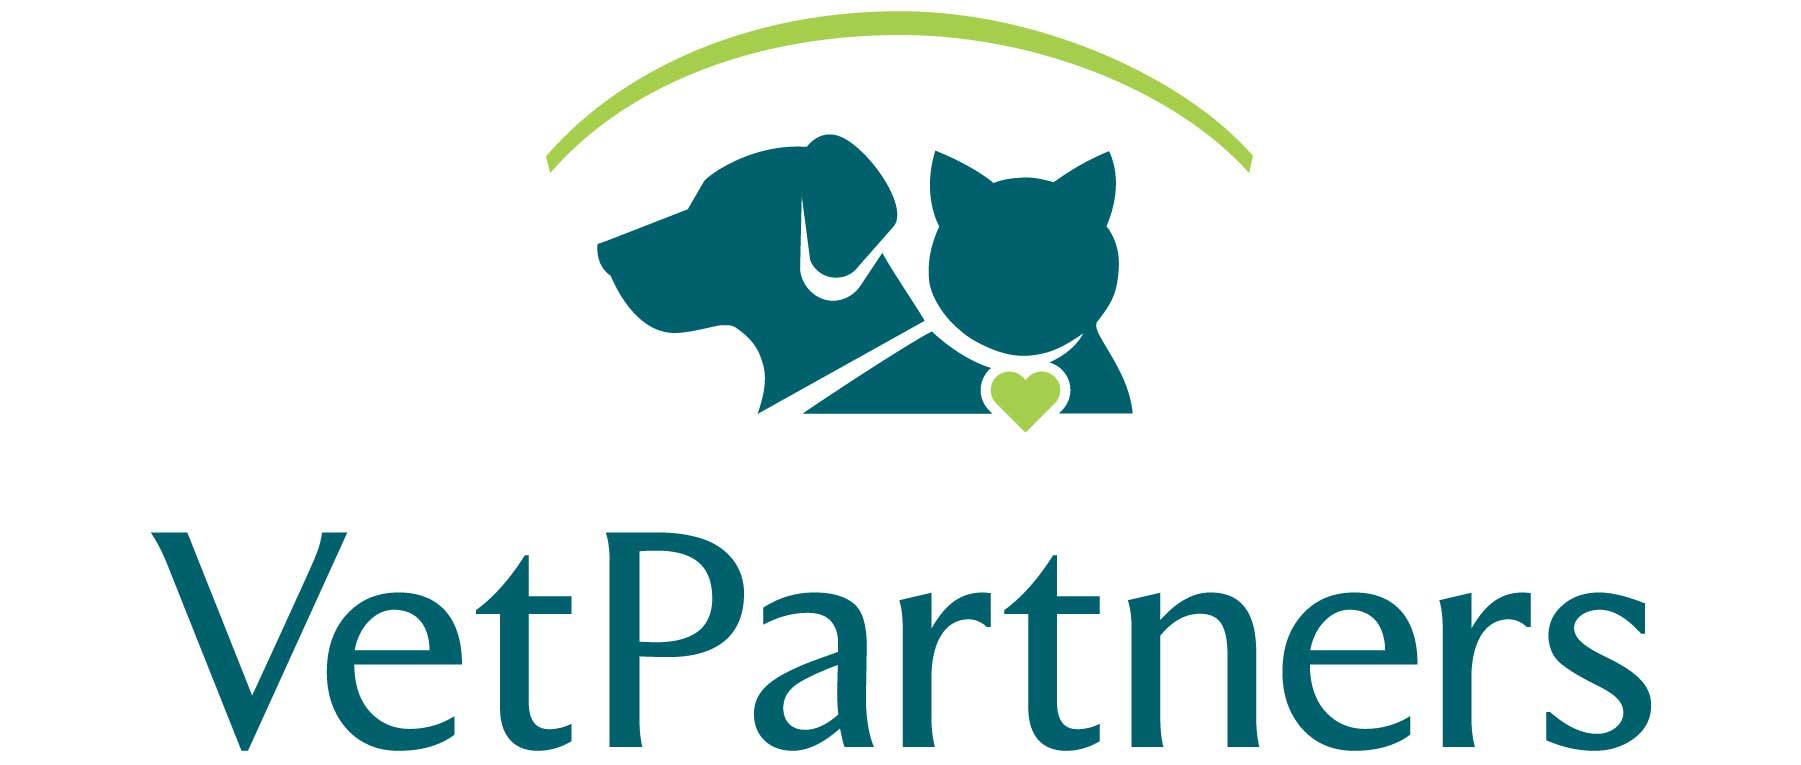 VetPartners Logo - Vetstoria Customer